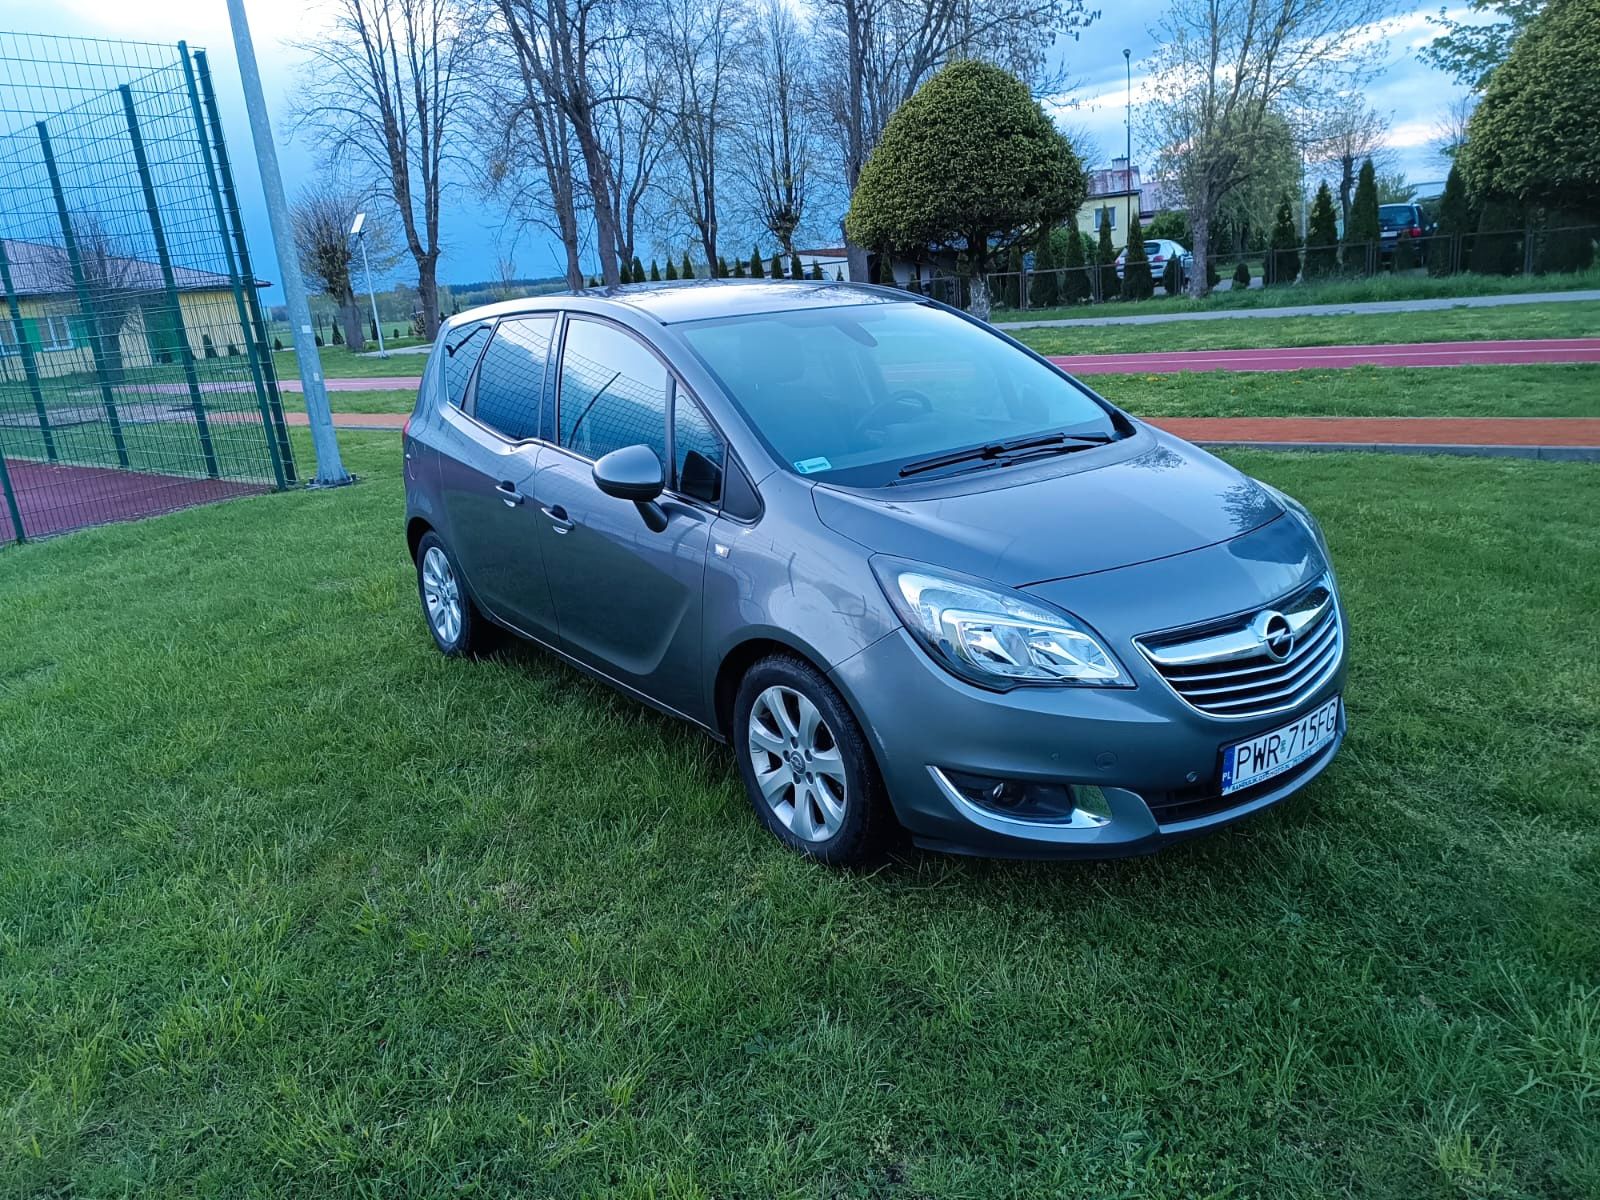 Opel Meriva 1.6 CDTI 110km full opcja.